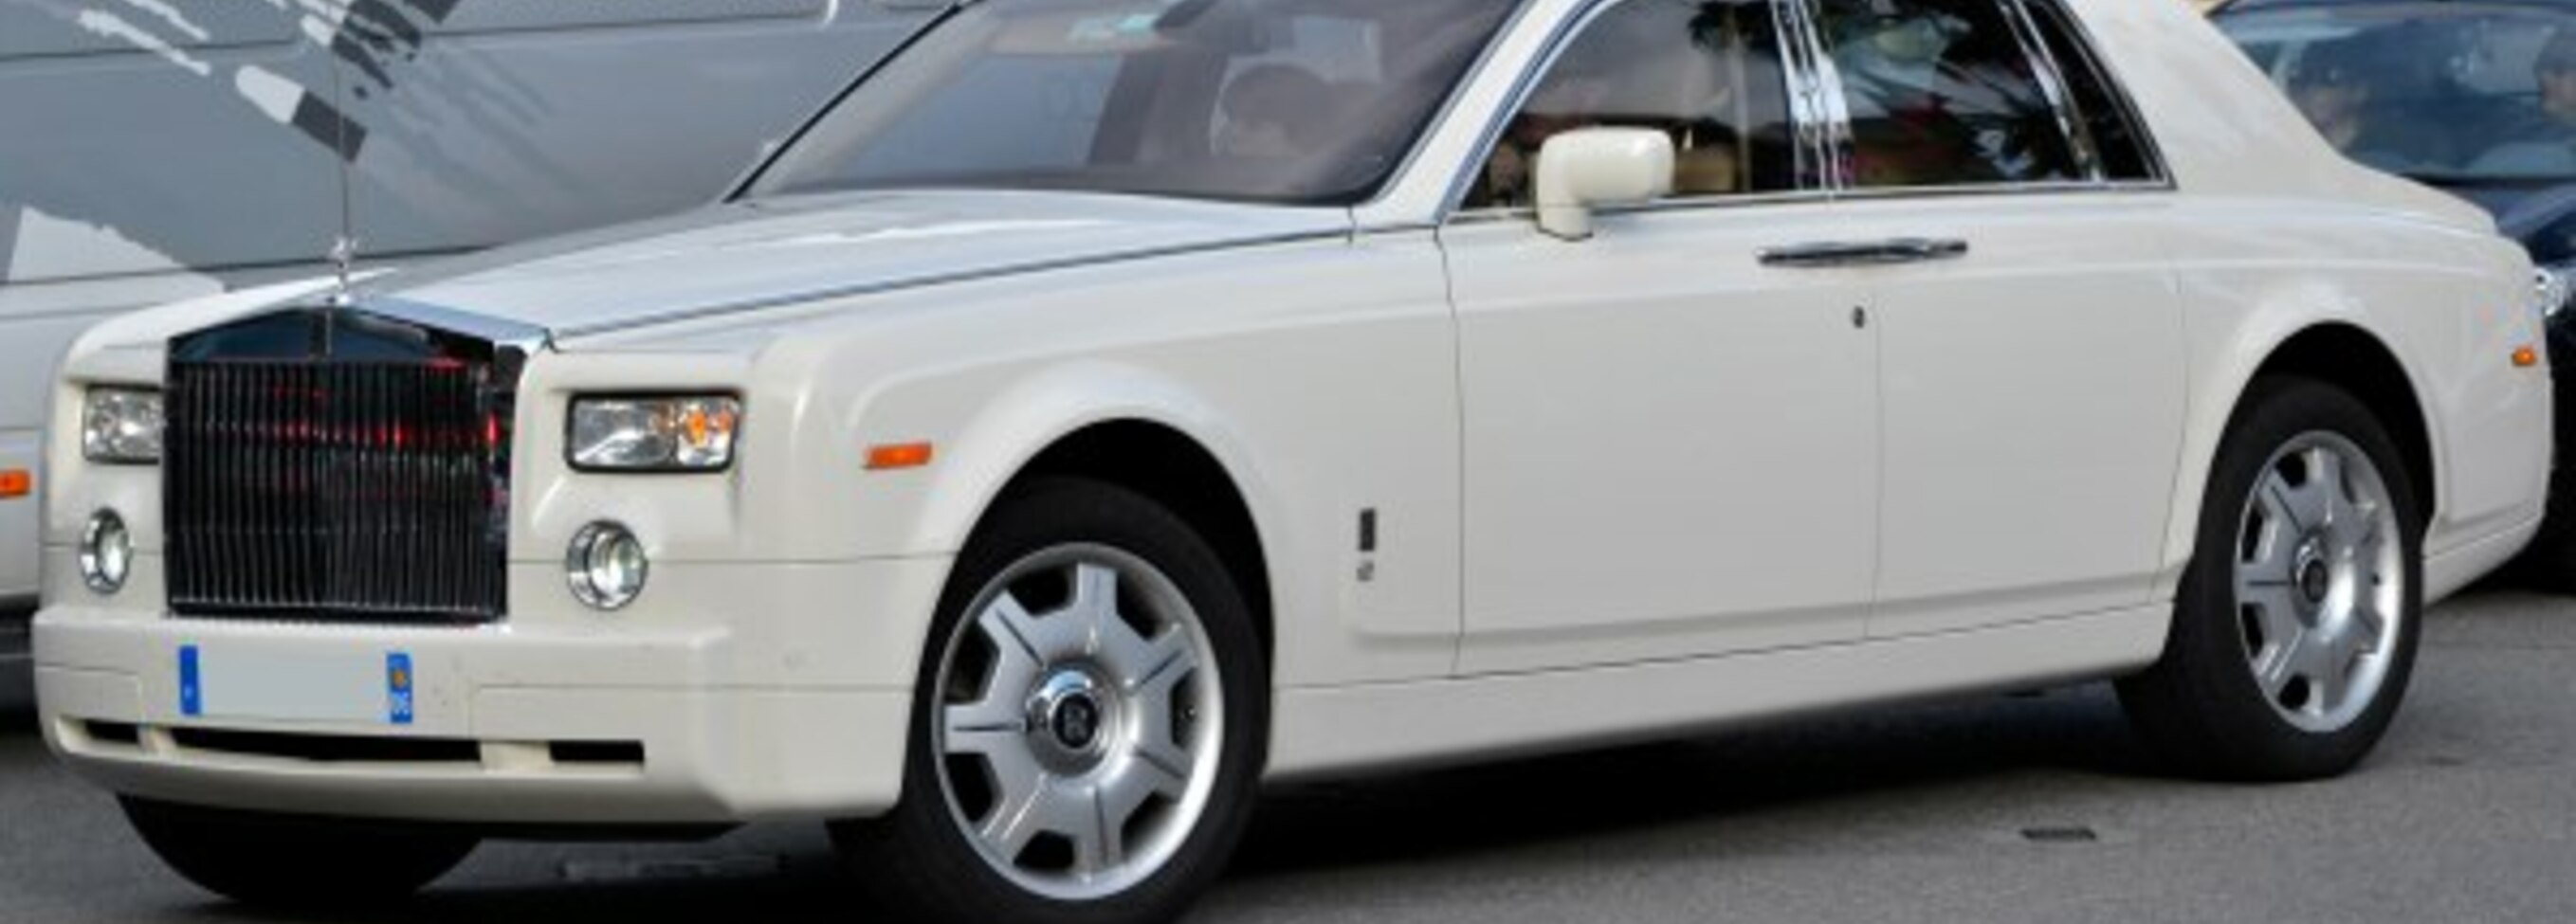 Doug DeMuro on Twitter Ending MONDAY on CarsAndBids 2005 RollsRoyce  Phantom with 33000 miles Door umbrellas included Check it out  httpstcocEPAwueBVd httpstcow6AvGqnkJK  Twitter